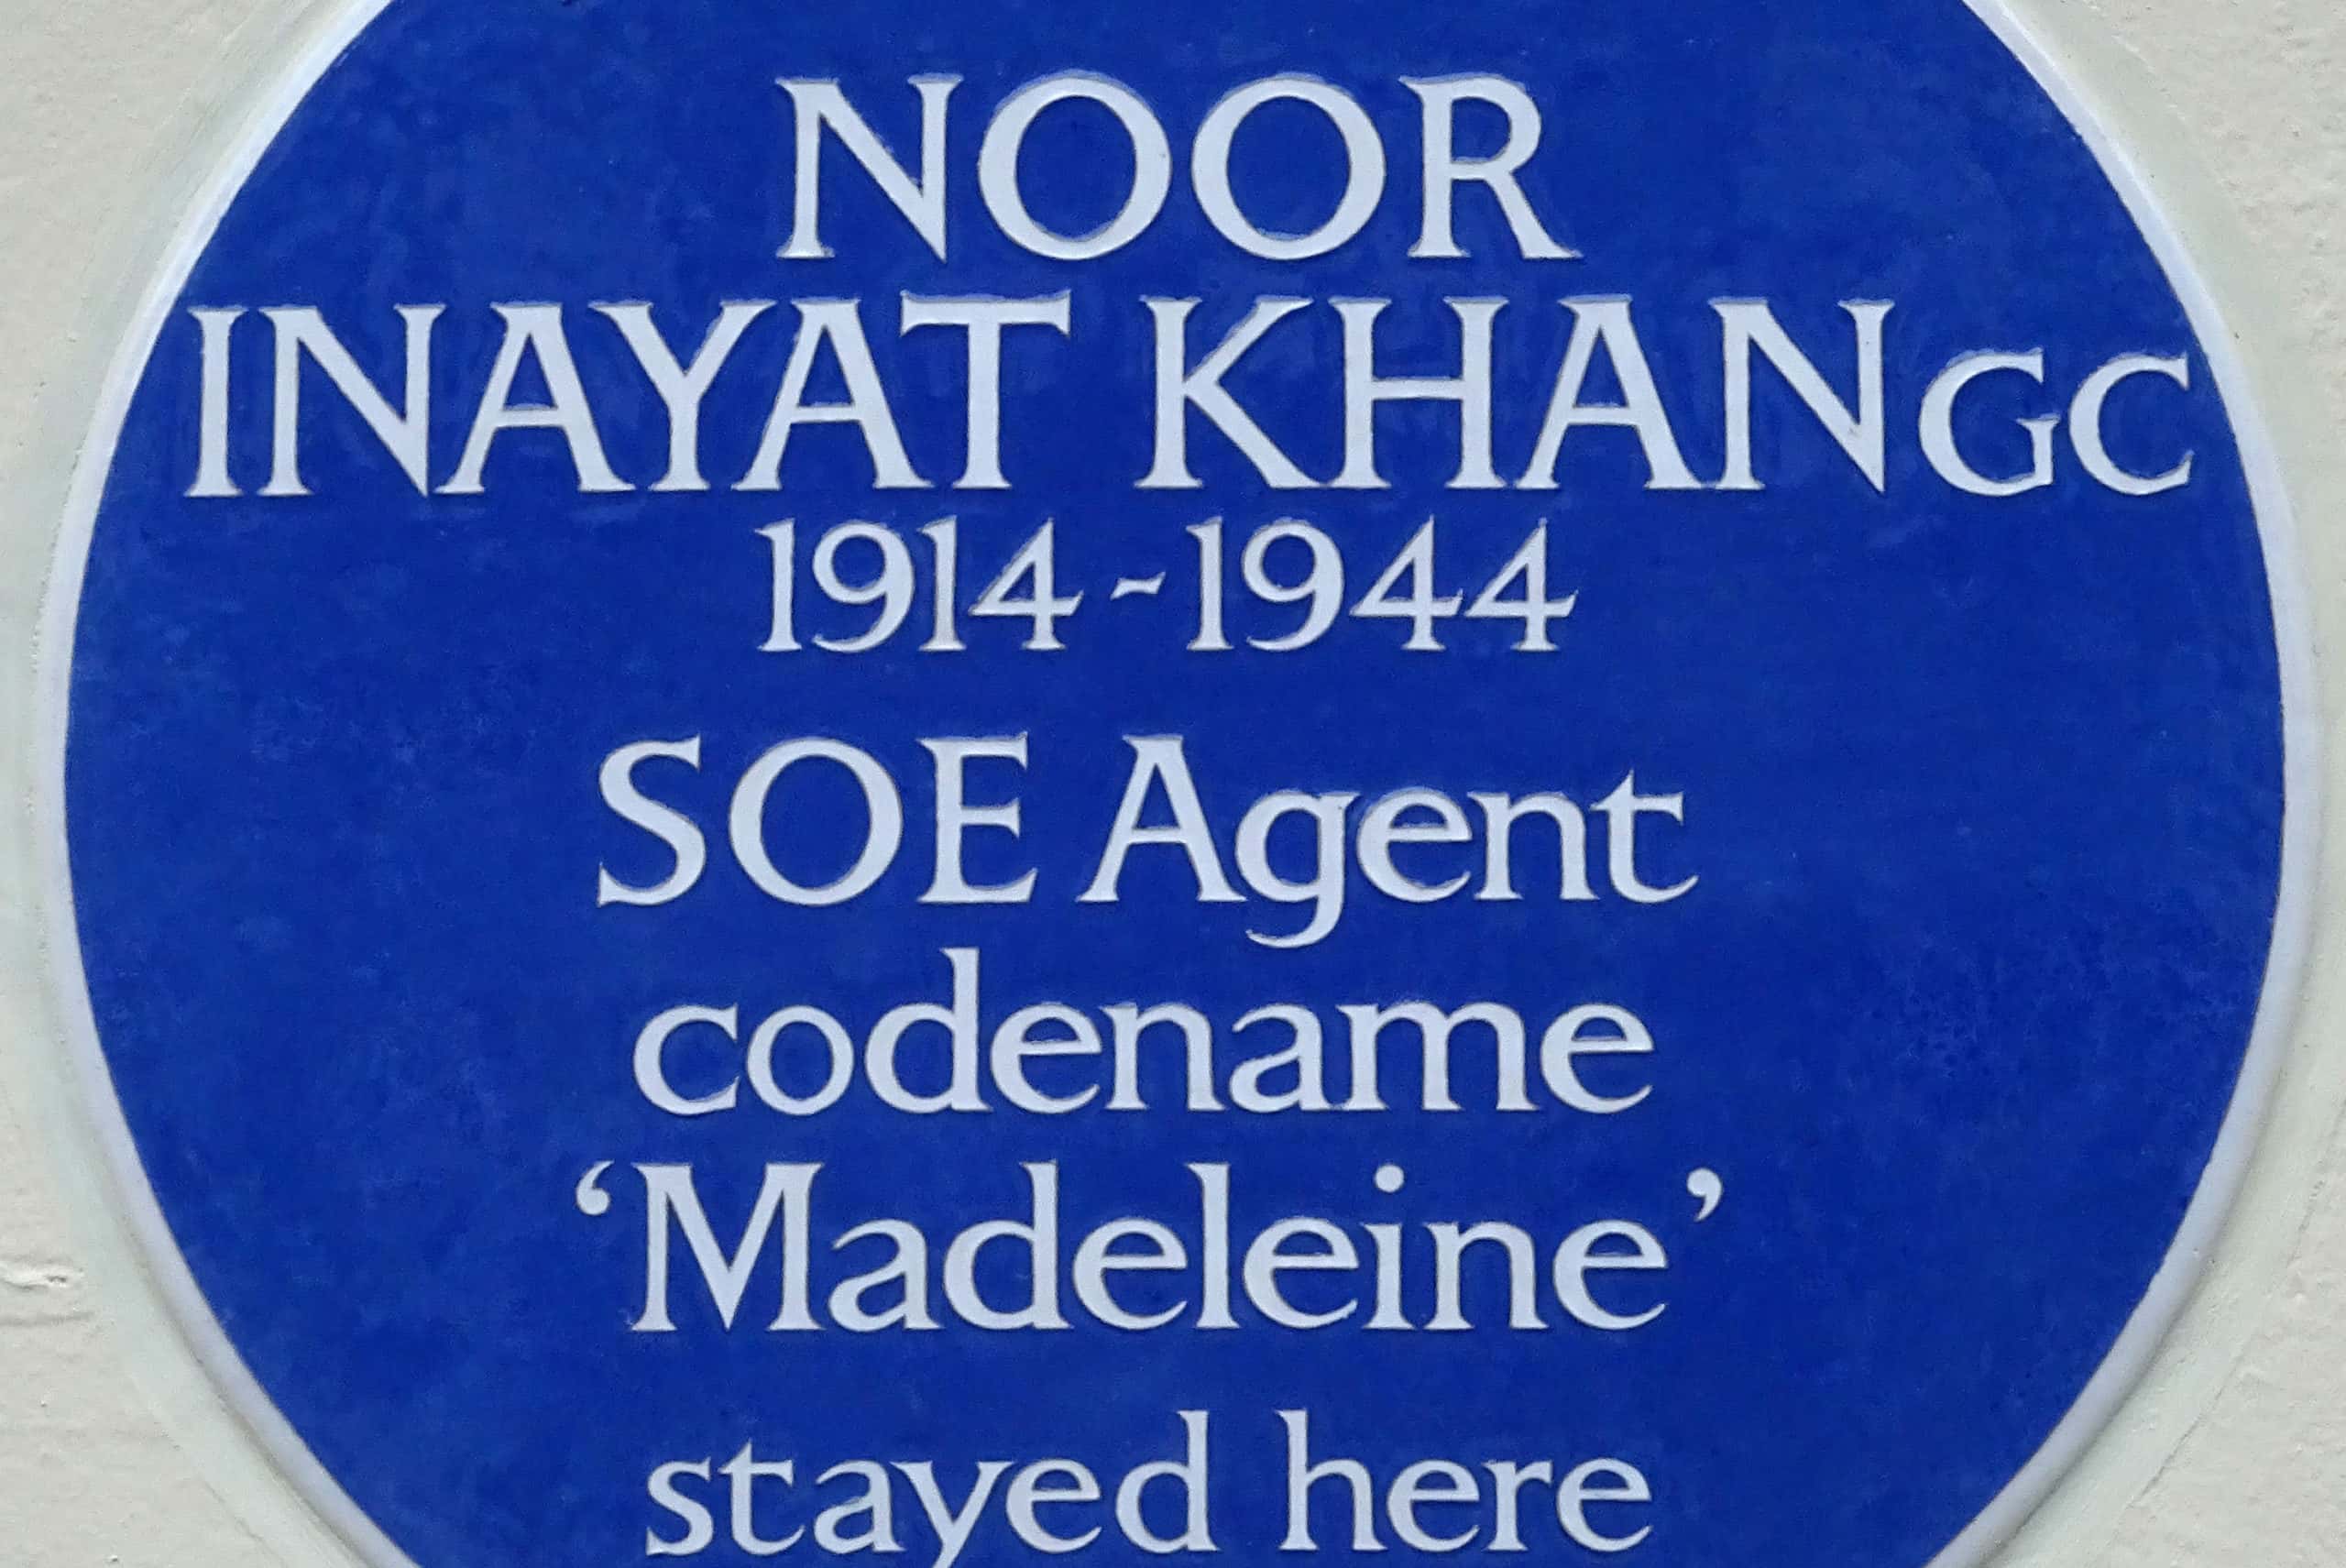 Noor Inayat Khan facts